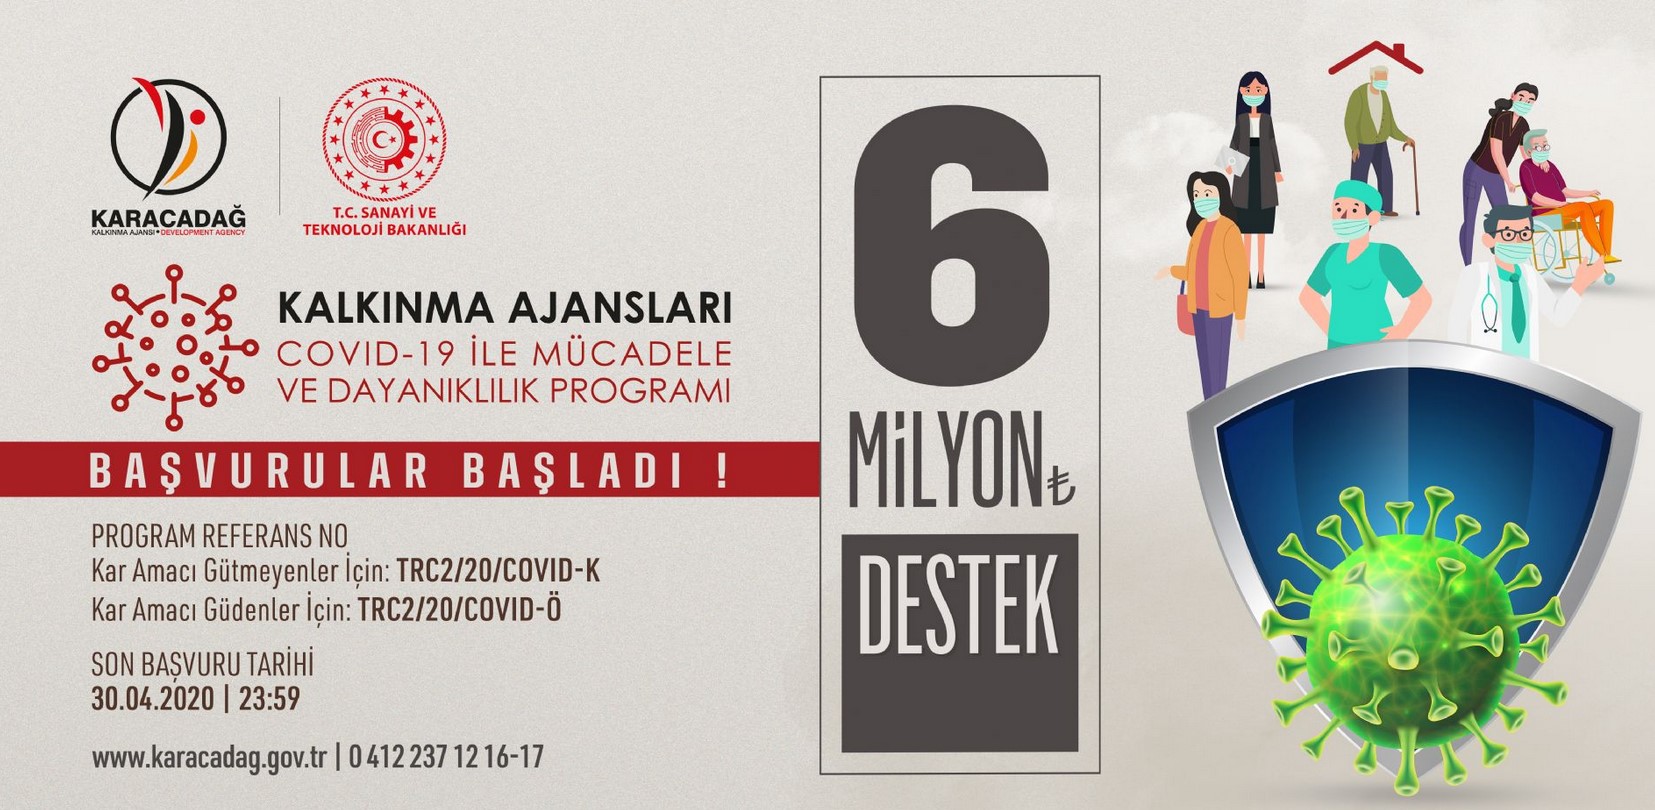 Karacadağ Kalkınma Ajansı Diyarbakır - Şanlıurfa COVID-19 ile Mücadele ve Dayanıklılık Programı